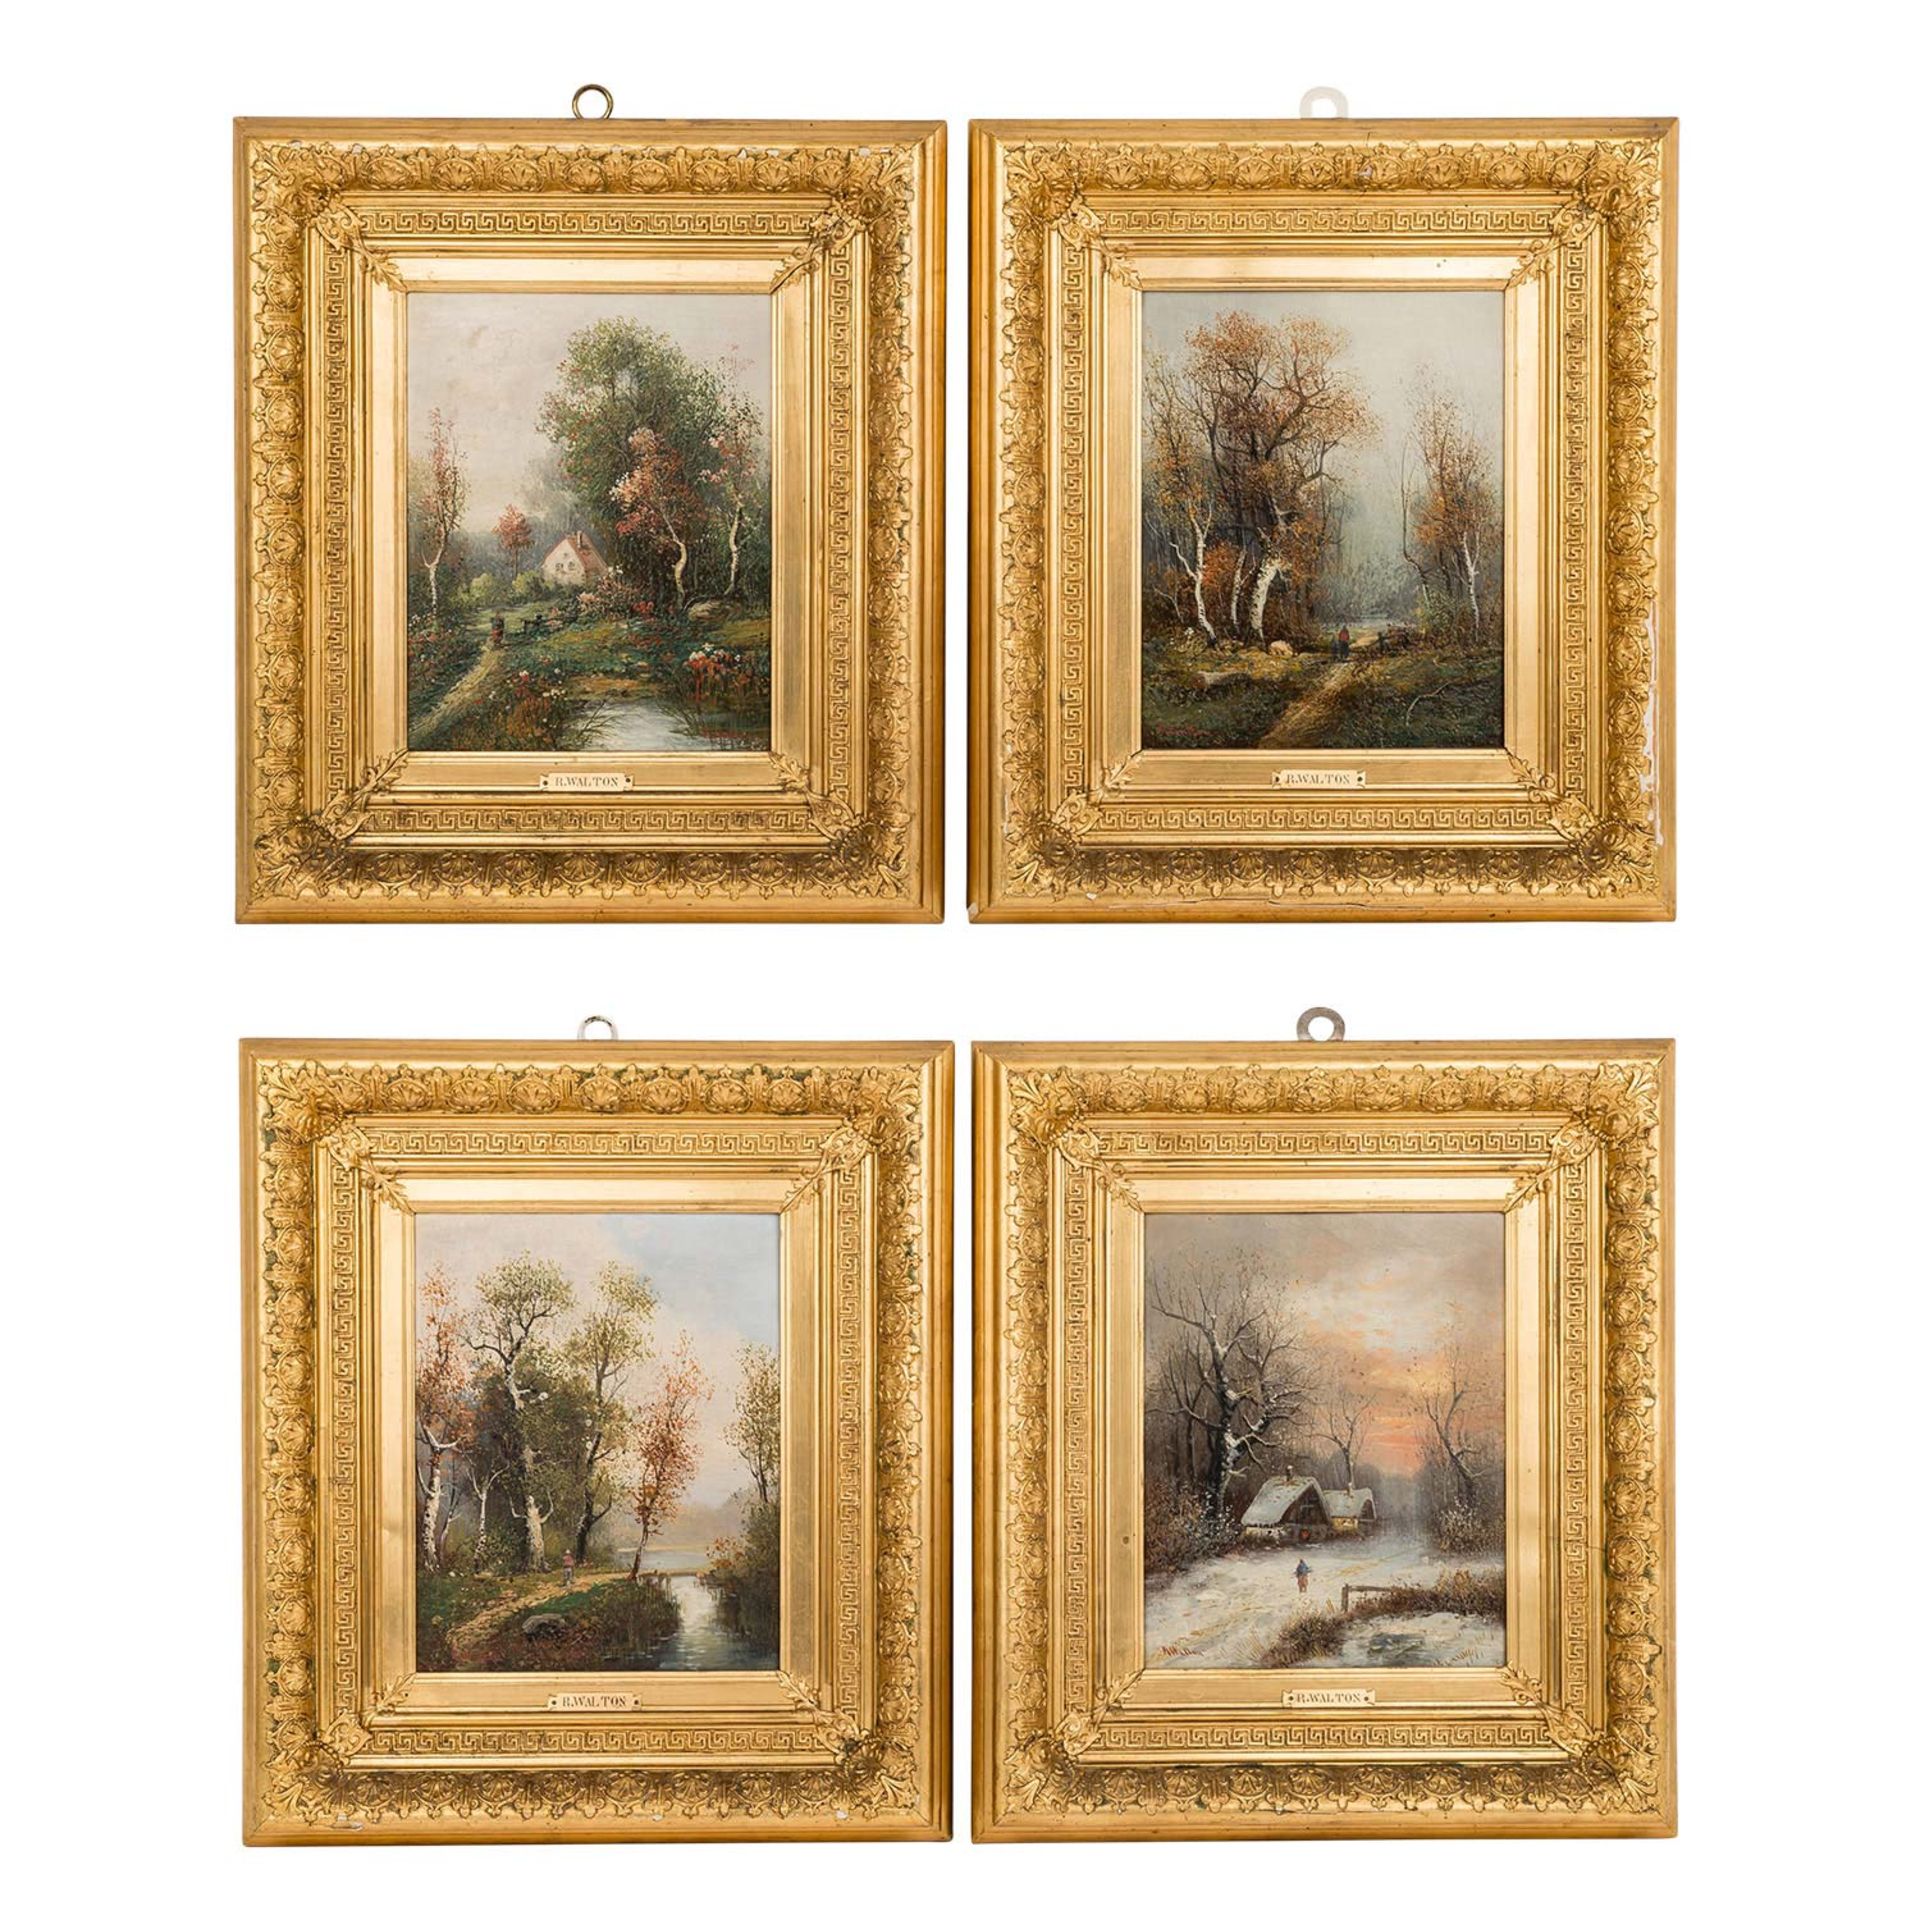 MALER DES 20. JH. Serie der "Vier Jahreszeiten" Öl auf Holz, sig. "R. Walton", HxB: 27/21 cm.